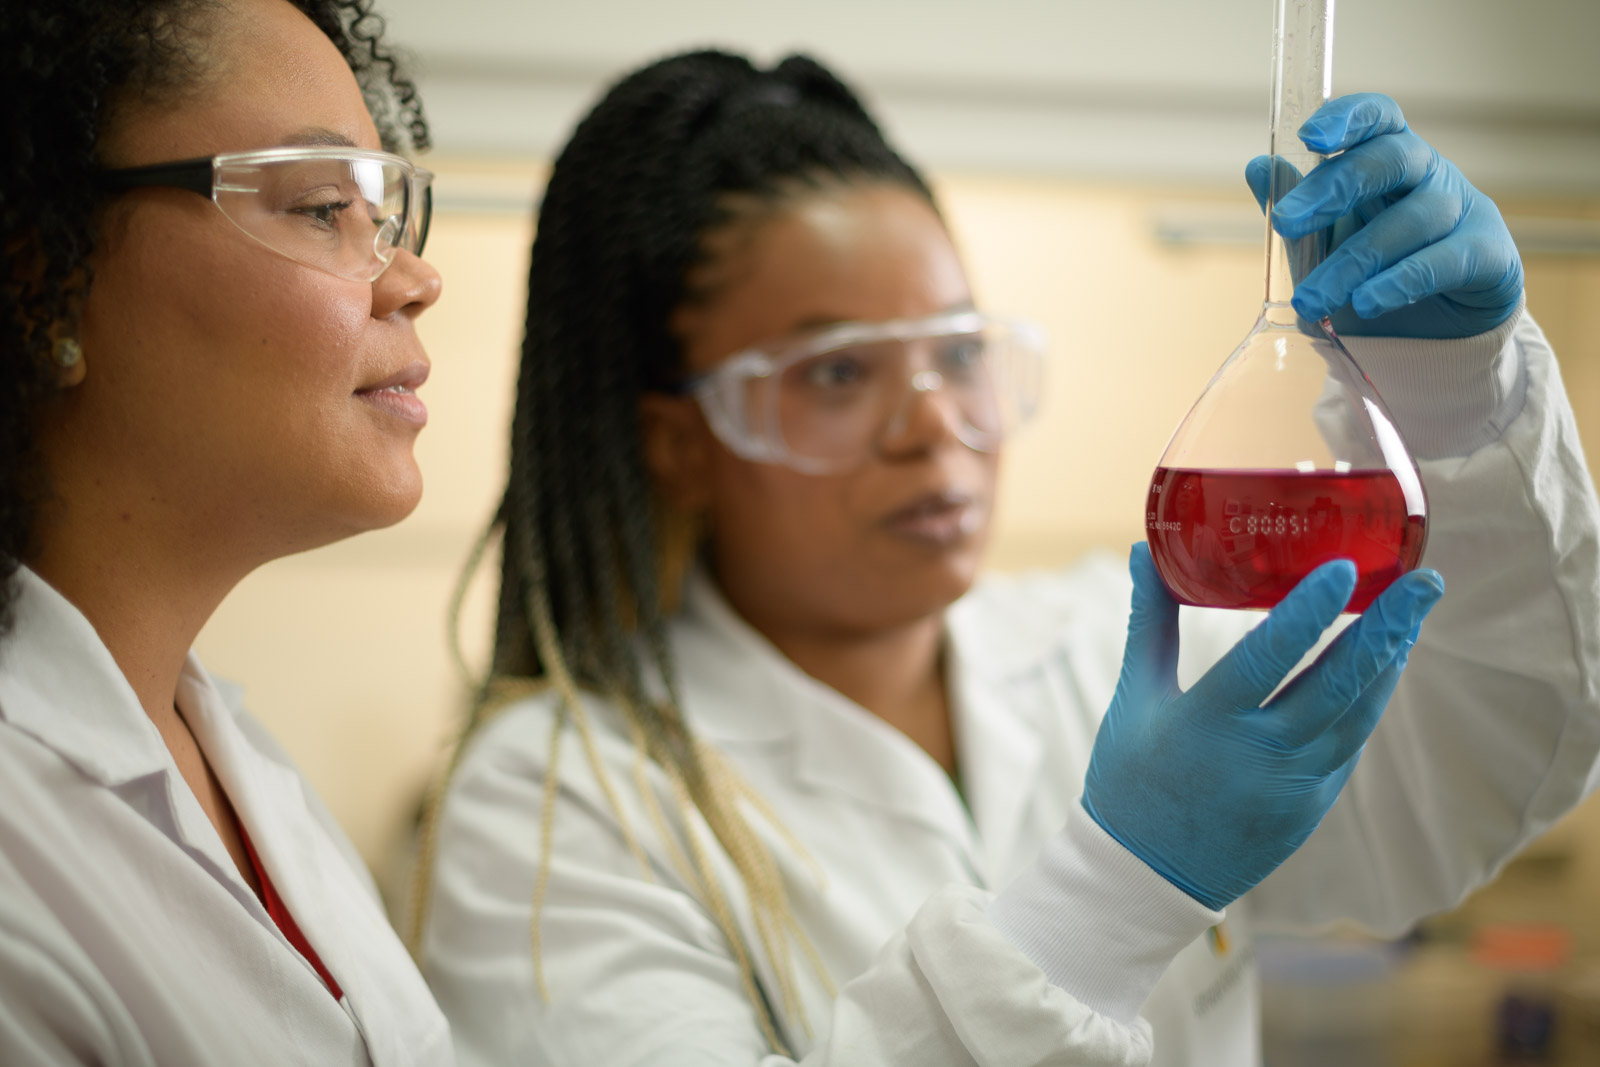 Duas mulheres negras e cientistas estão lado a lado em um laboratório. Elas estão usando óculos de proteção, jalecos branco e luvas azuis. A mulher da direita segura na altura do rosto um vidro de erlenmeyer com um líquido vermelho.